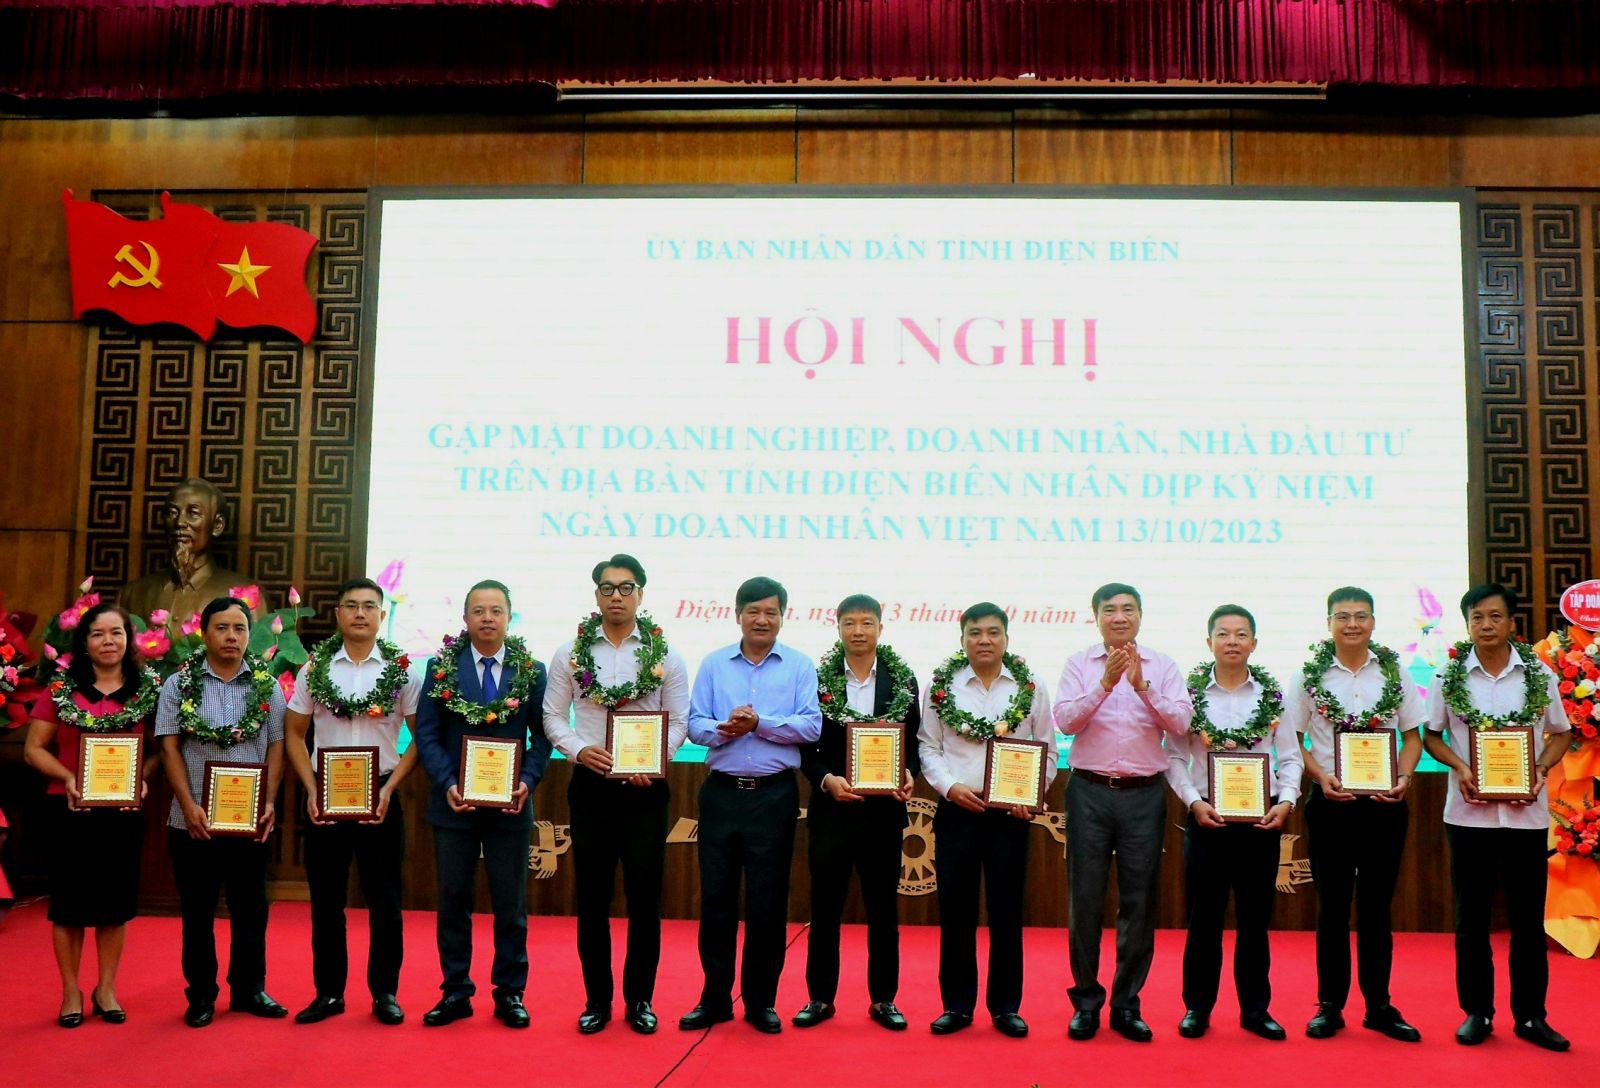 Bí thư Tỉnh ủy Trần Quốc Cường và Chủ tịch UBND tỉnh Lê Thành Đô trao chứng nhận cho các doanh nghiệp, doanh nhân, nhà đầu tư có nhiều đóng góp trong sự phát triển của tỉnh.